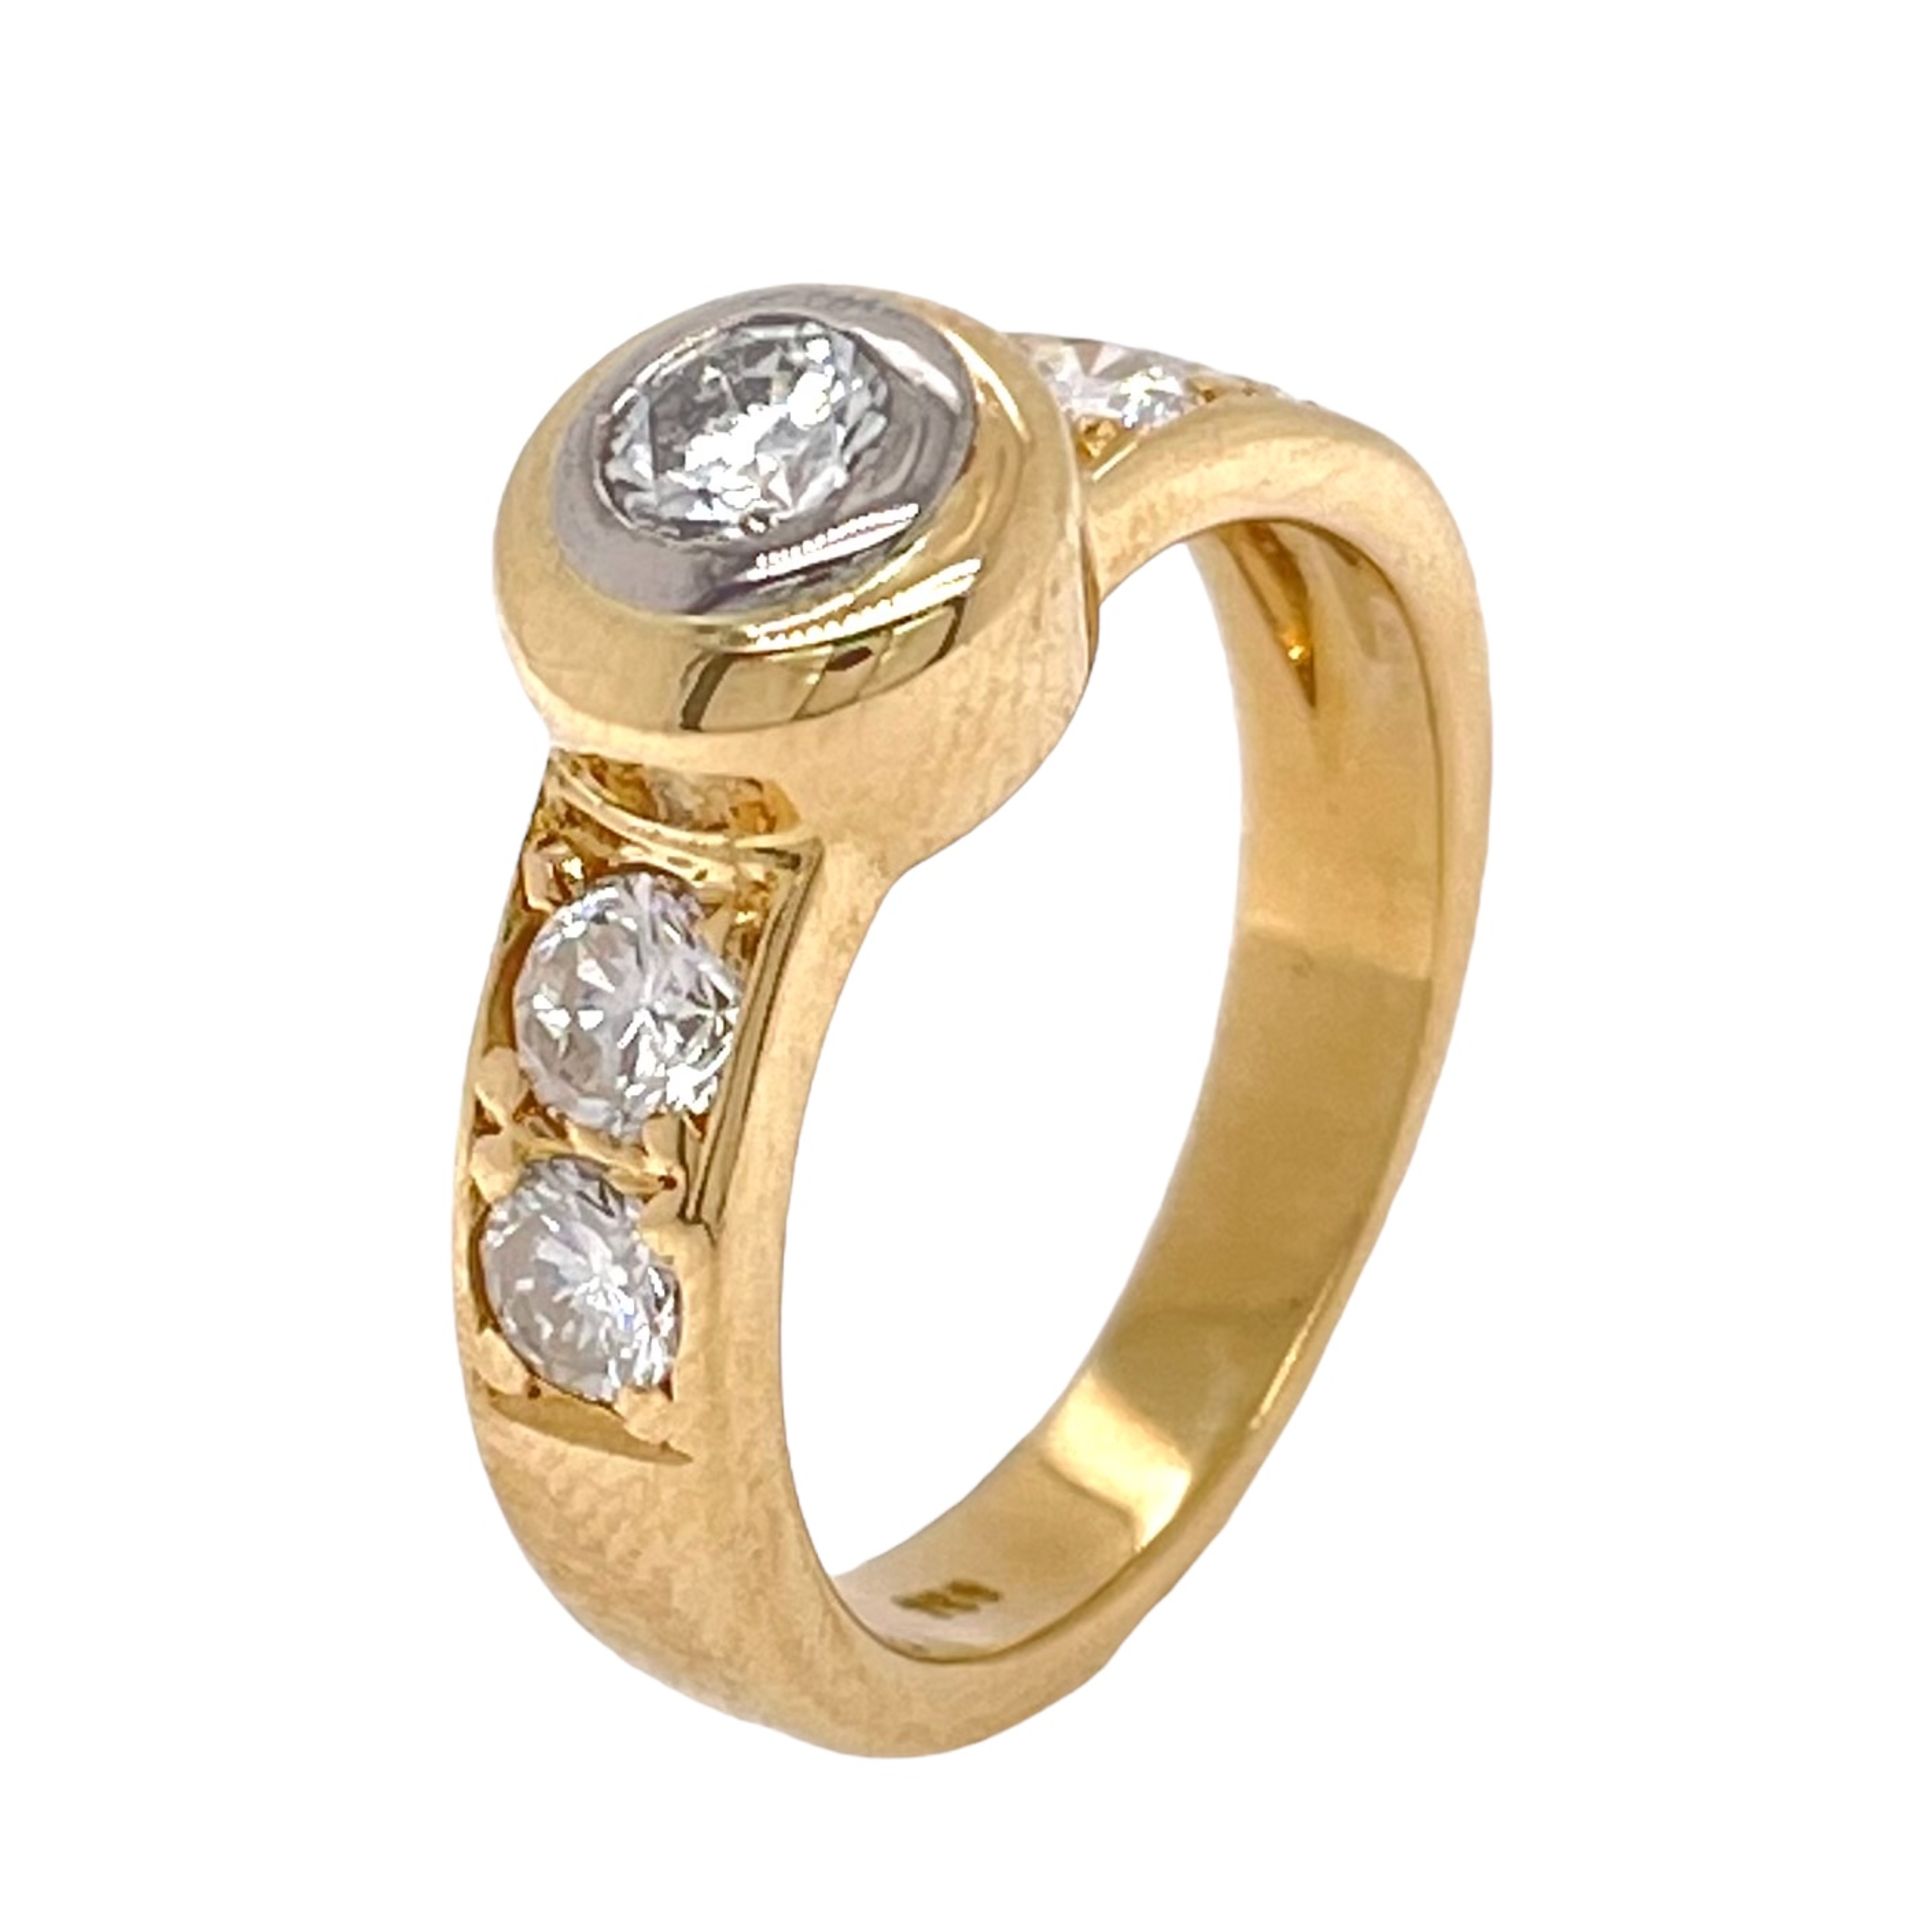 Ring 4,5g 750/- Gelbgold mit 5 Diamanten zus. ca. 0,50 ct., Ringgröße ca. 44